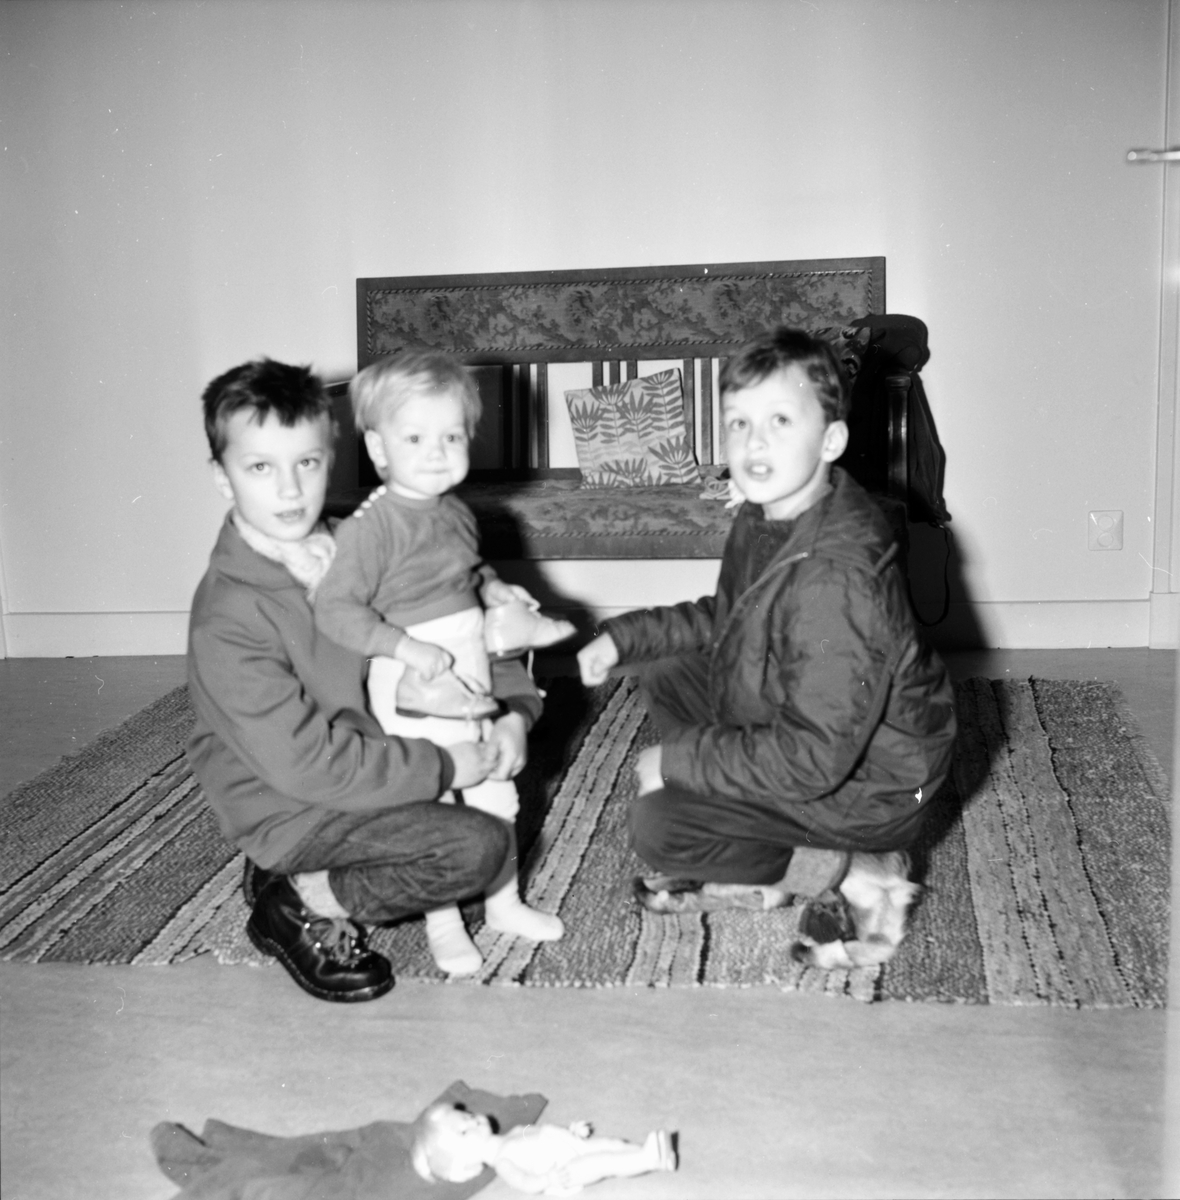 Barnen Svensson, Åke och Ingrid och Roger Slaviero.
Hos familjen Jonas F. Svensson i Norrbyn, Söderala.
30 nov 1965